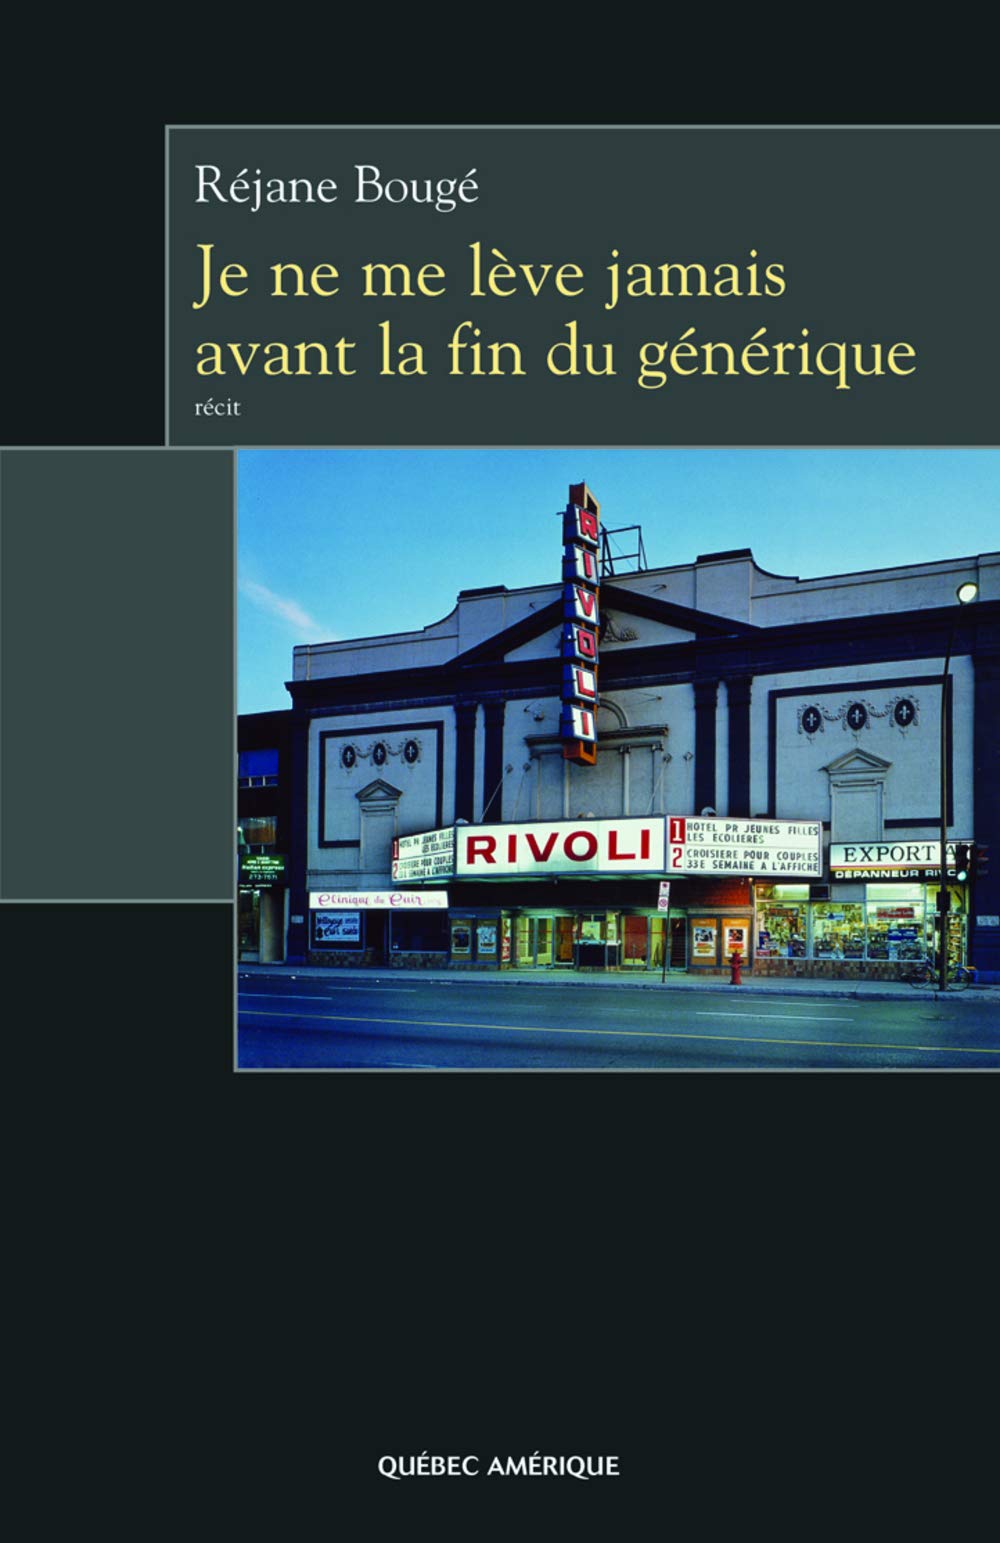 Livre ISBN 2764403925 Je ne me lève jamais avant fingénérique (Réjane Bougé)